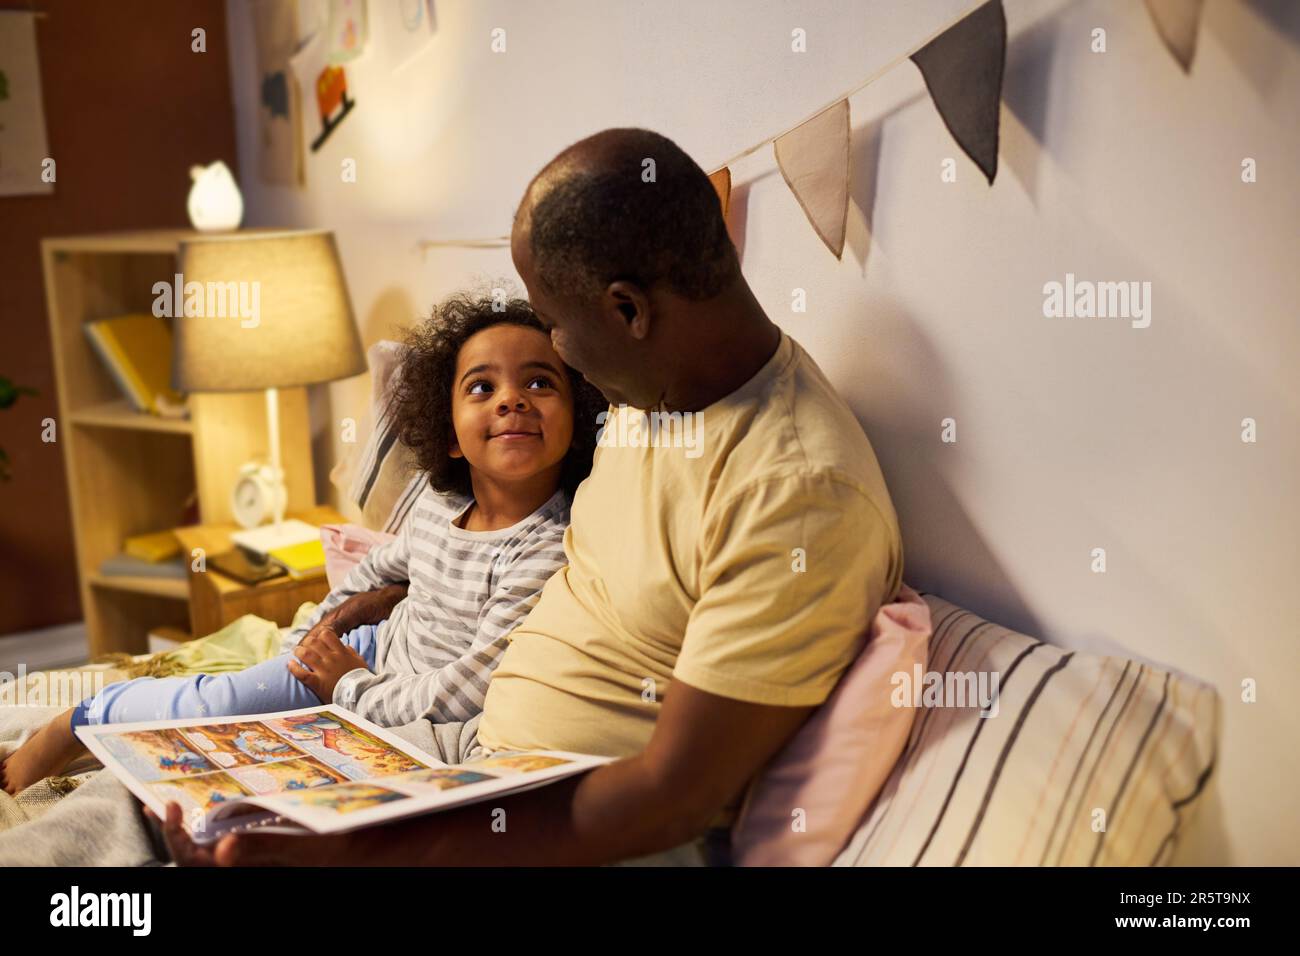 Ein afroamerikanischer Vater, der vor dem Schlafen seinem Kind Märchen vorliest, sie schauen sich Bilder an und reden miteinander Stockfoto